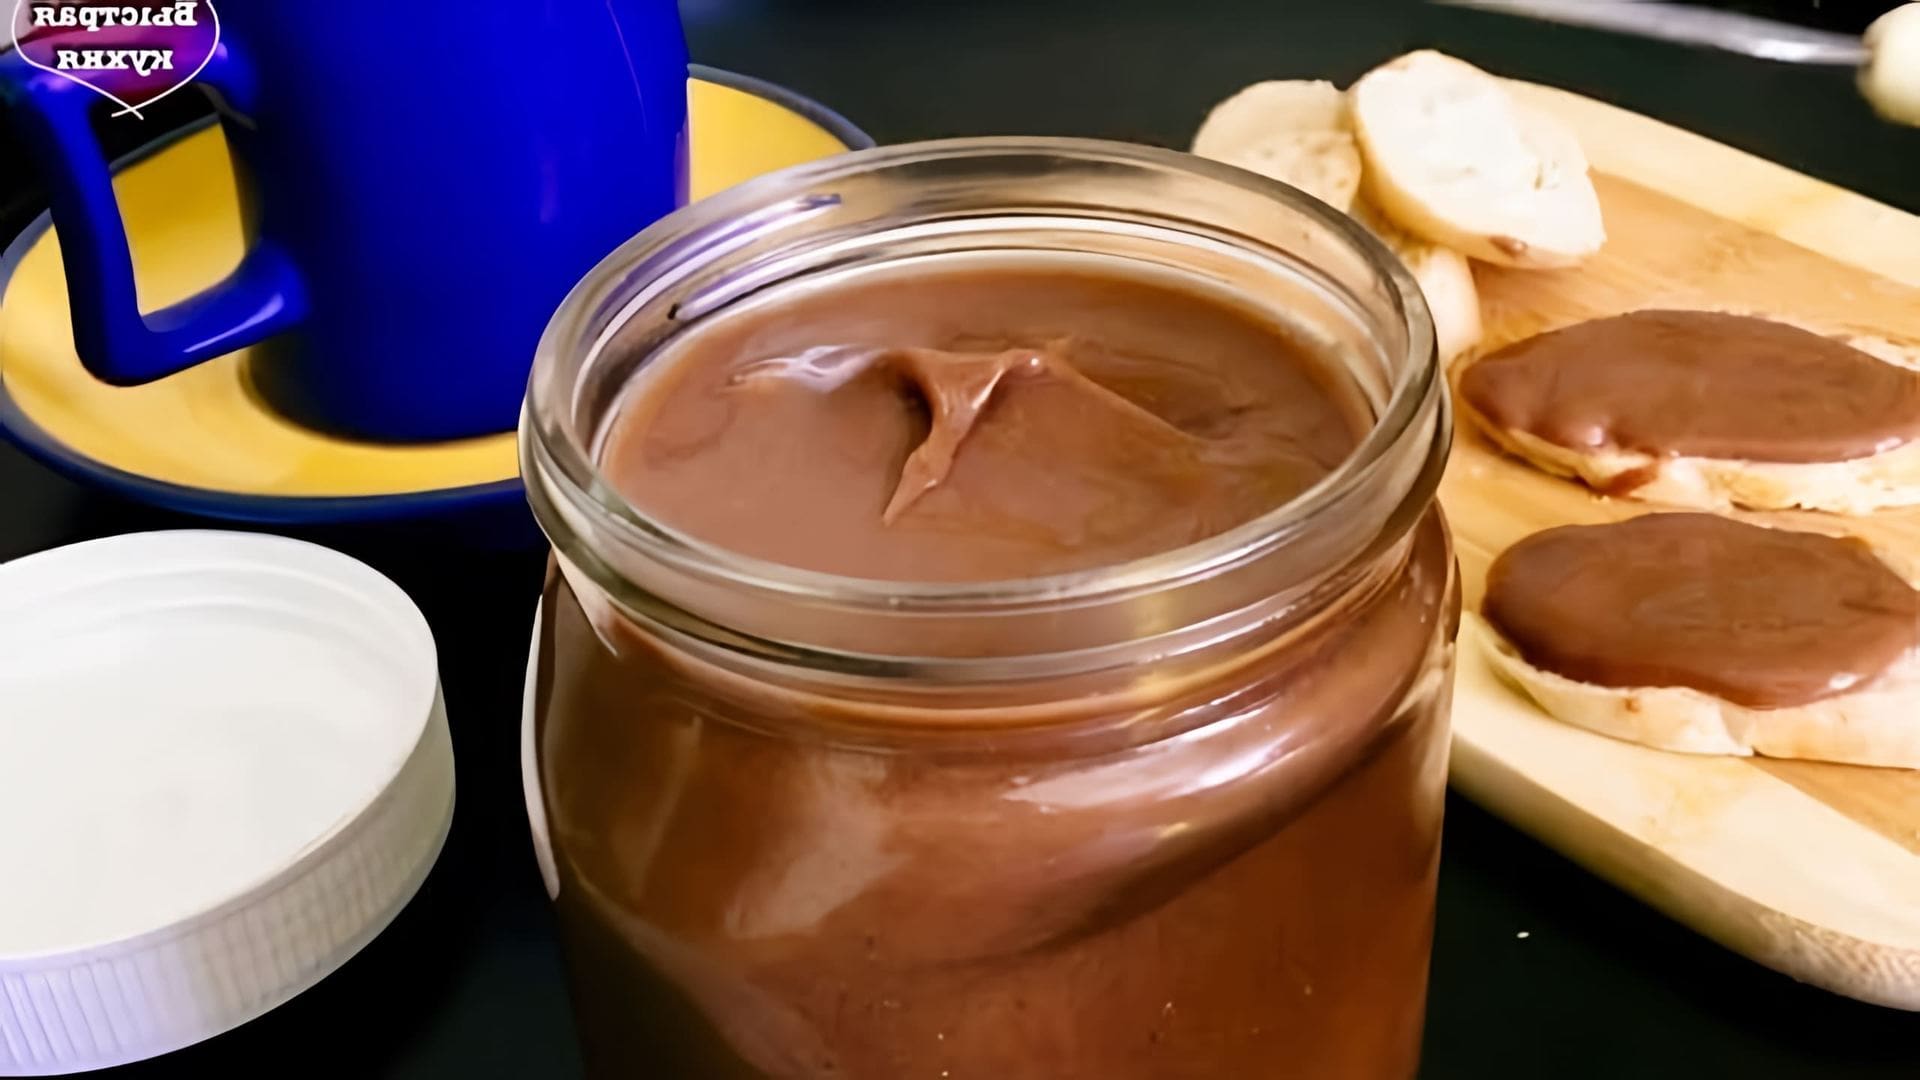 В этом видео демонстрируется процесс приготовления шоколадной пасты для бутербродов